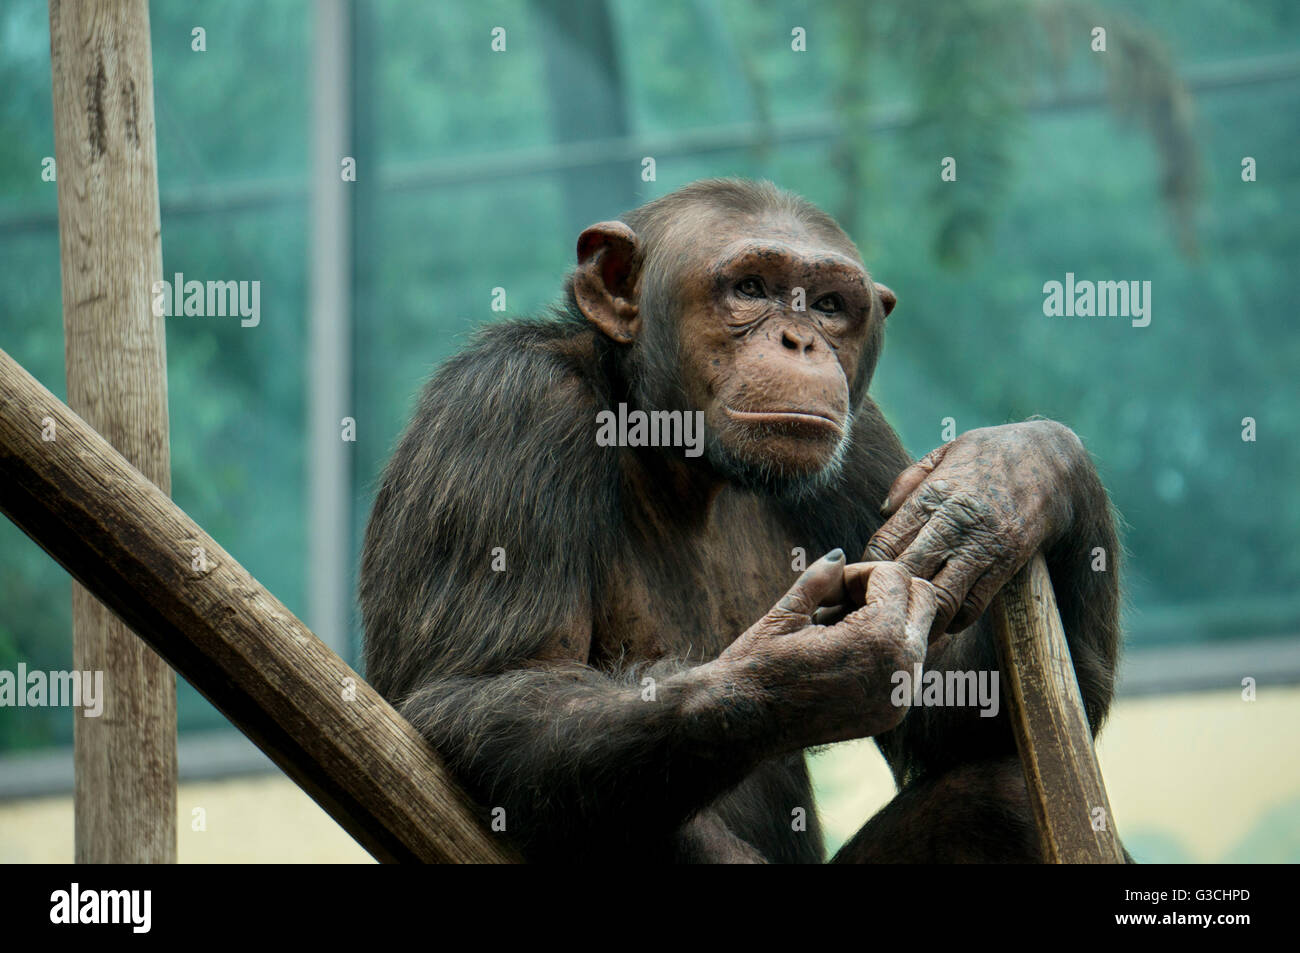 Pensive monkey, sitting, chimpanzee, Pan troglodytes Stock Photo